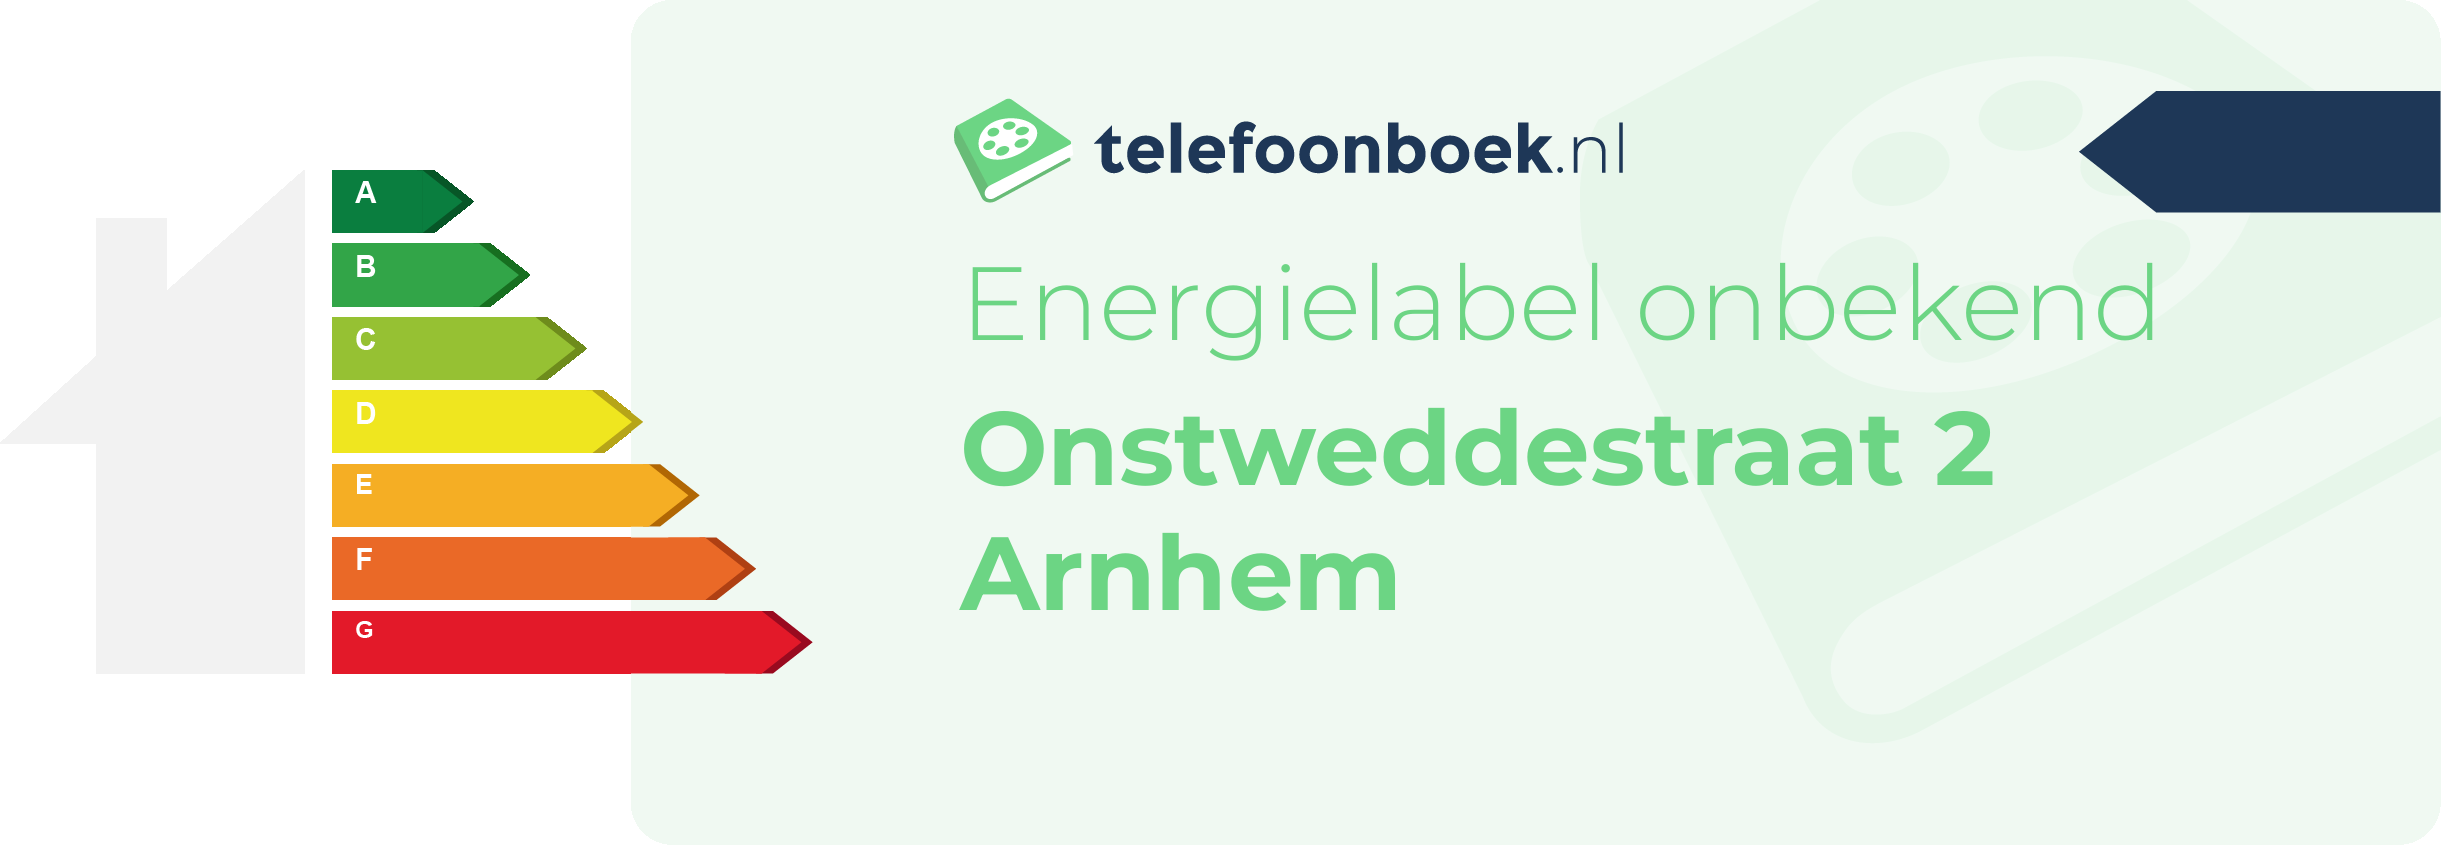 Energielabel Onstweddestraat 2 Arnhem